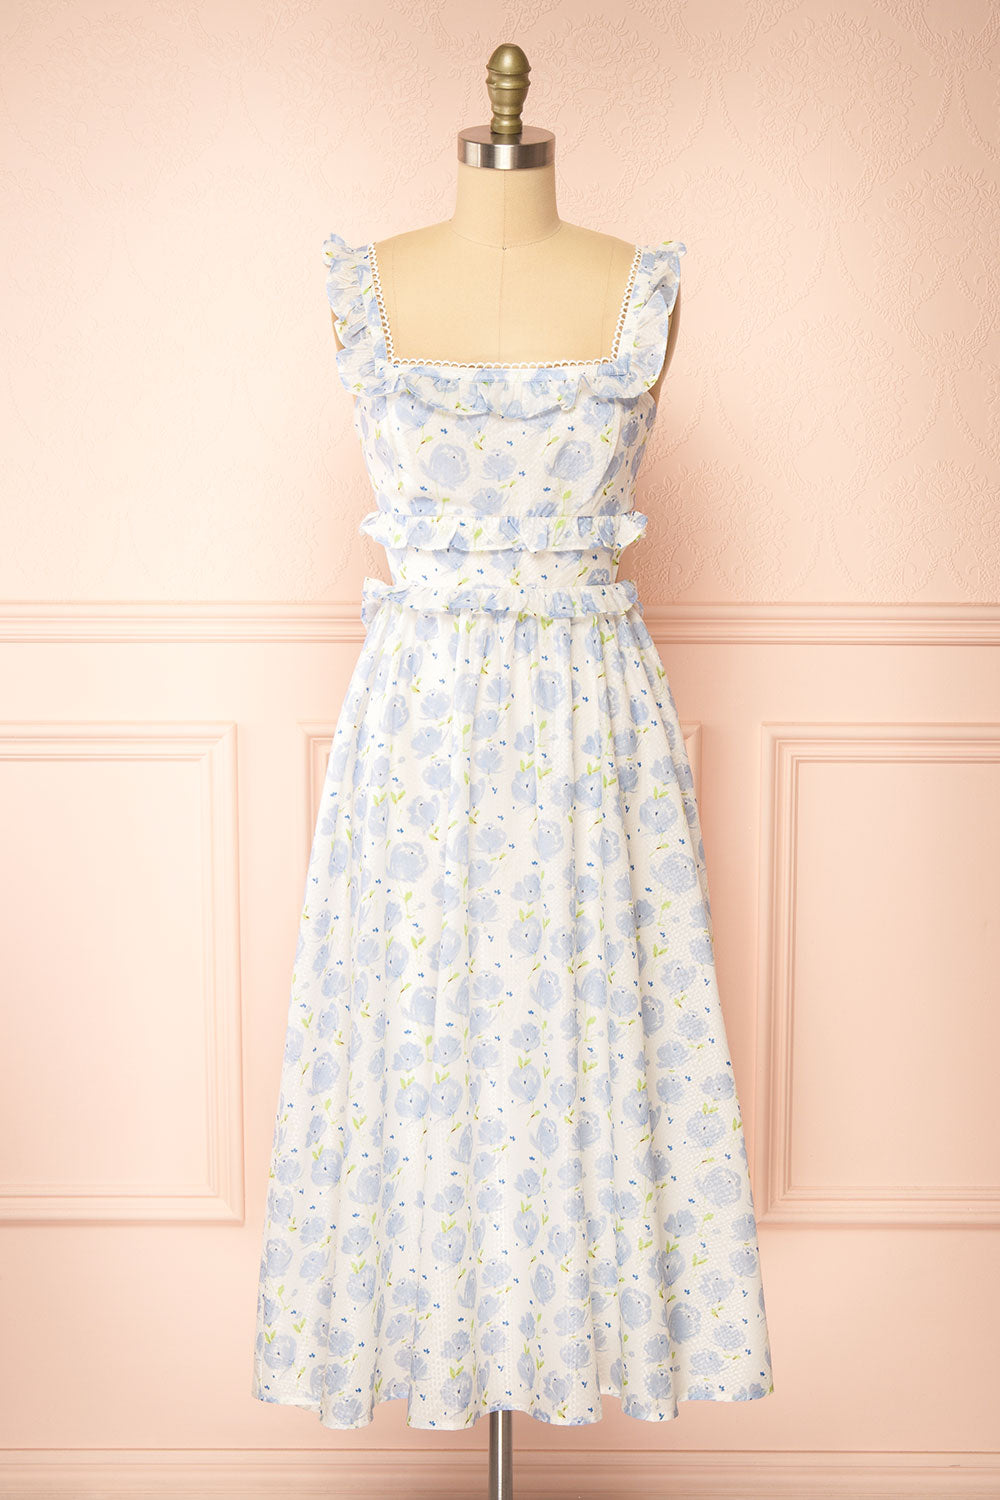 Aisha Long White Dress w/ Blue Floral Pattern | Boutique 1861 front view 